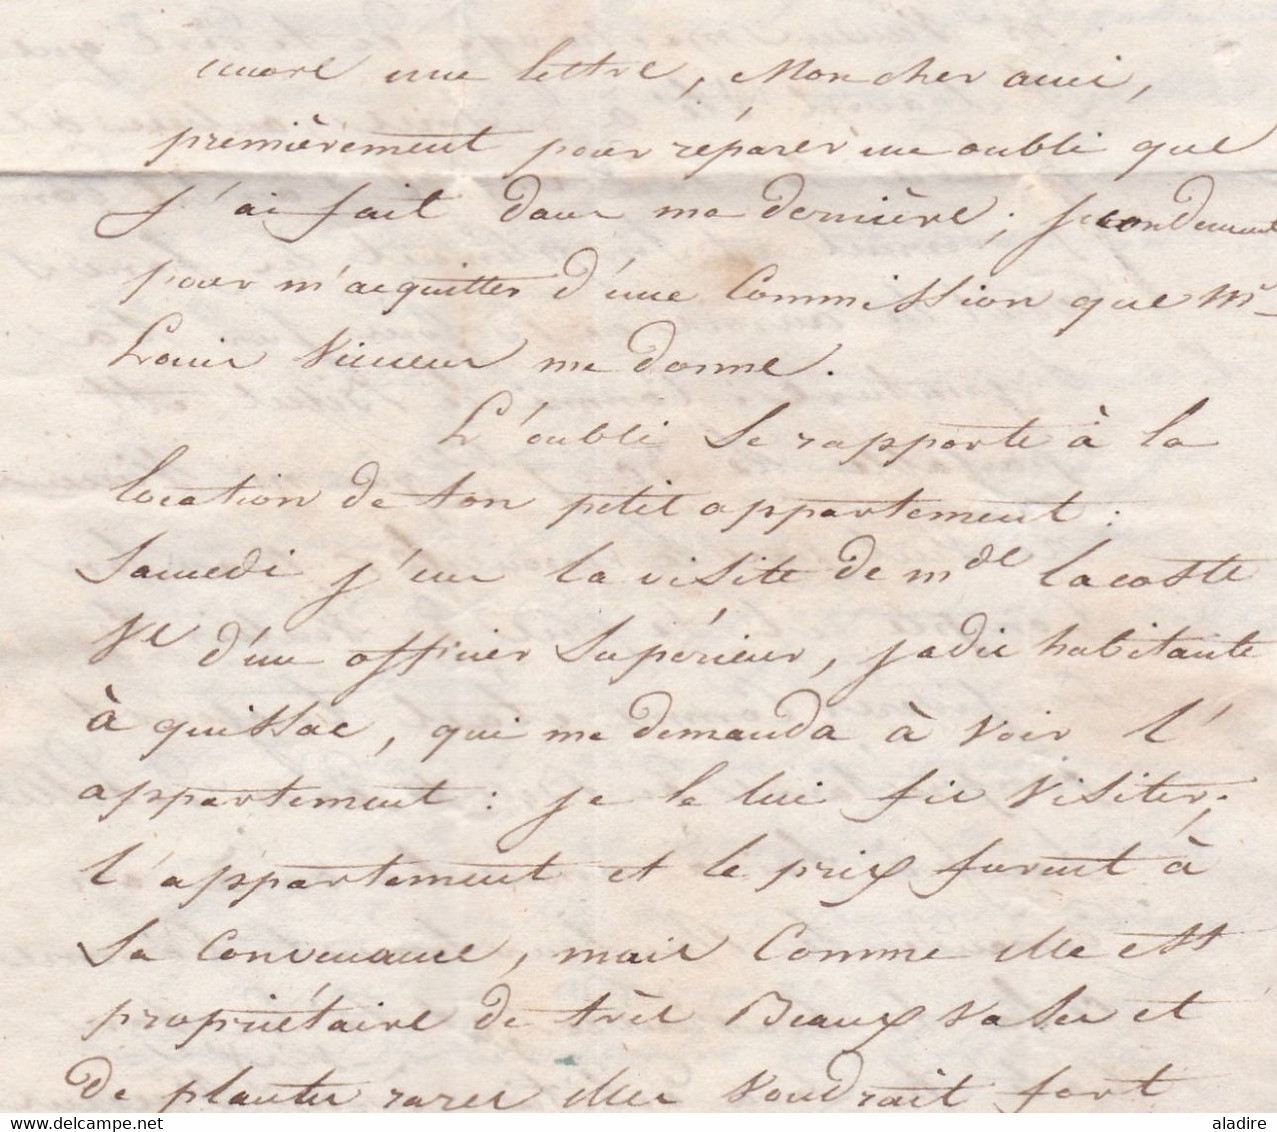 1835 - Lettre pliée avec corresp amicale de NISMES (gd cachet) Nîmes vers MENDE (fleurons) - Poste Restante - taxe 4